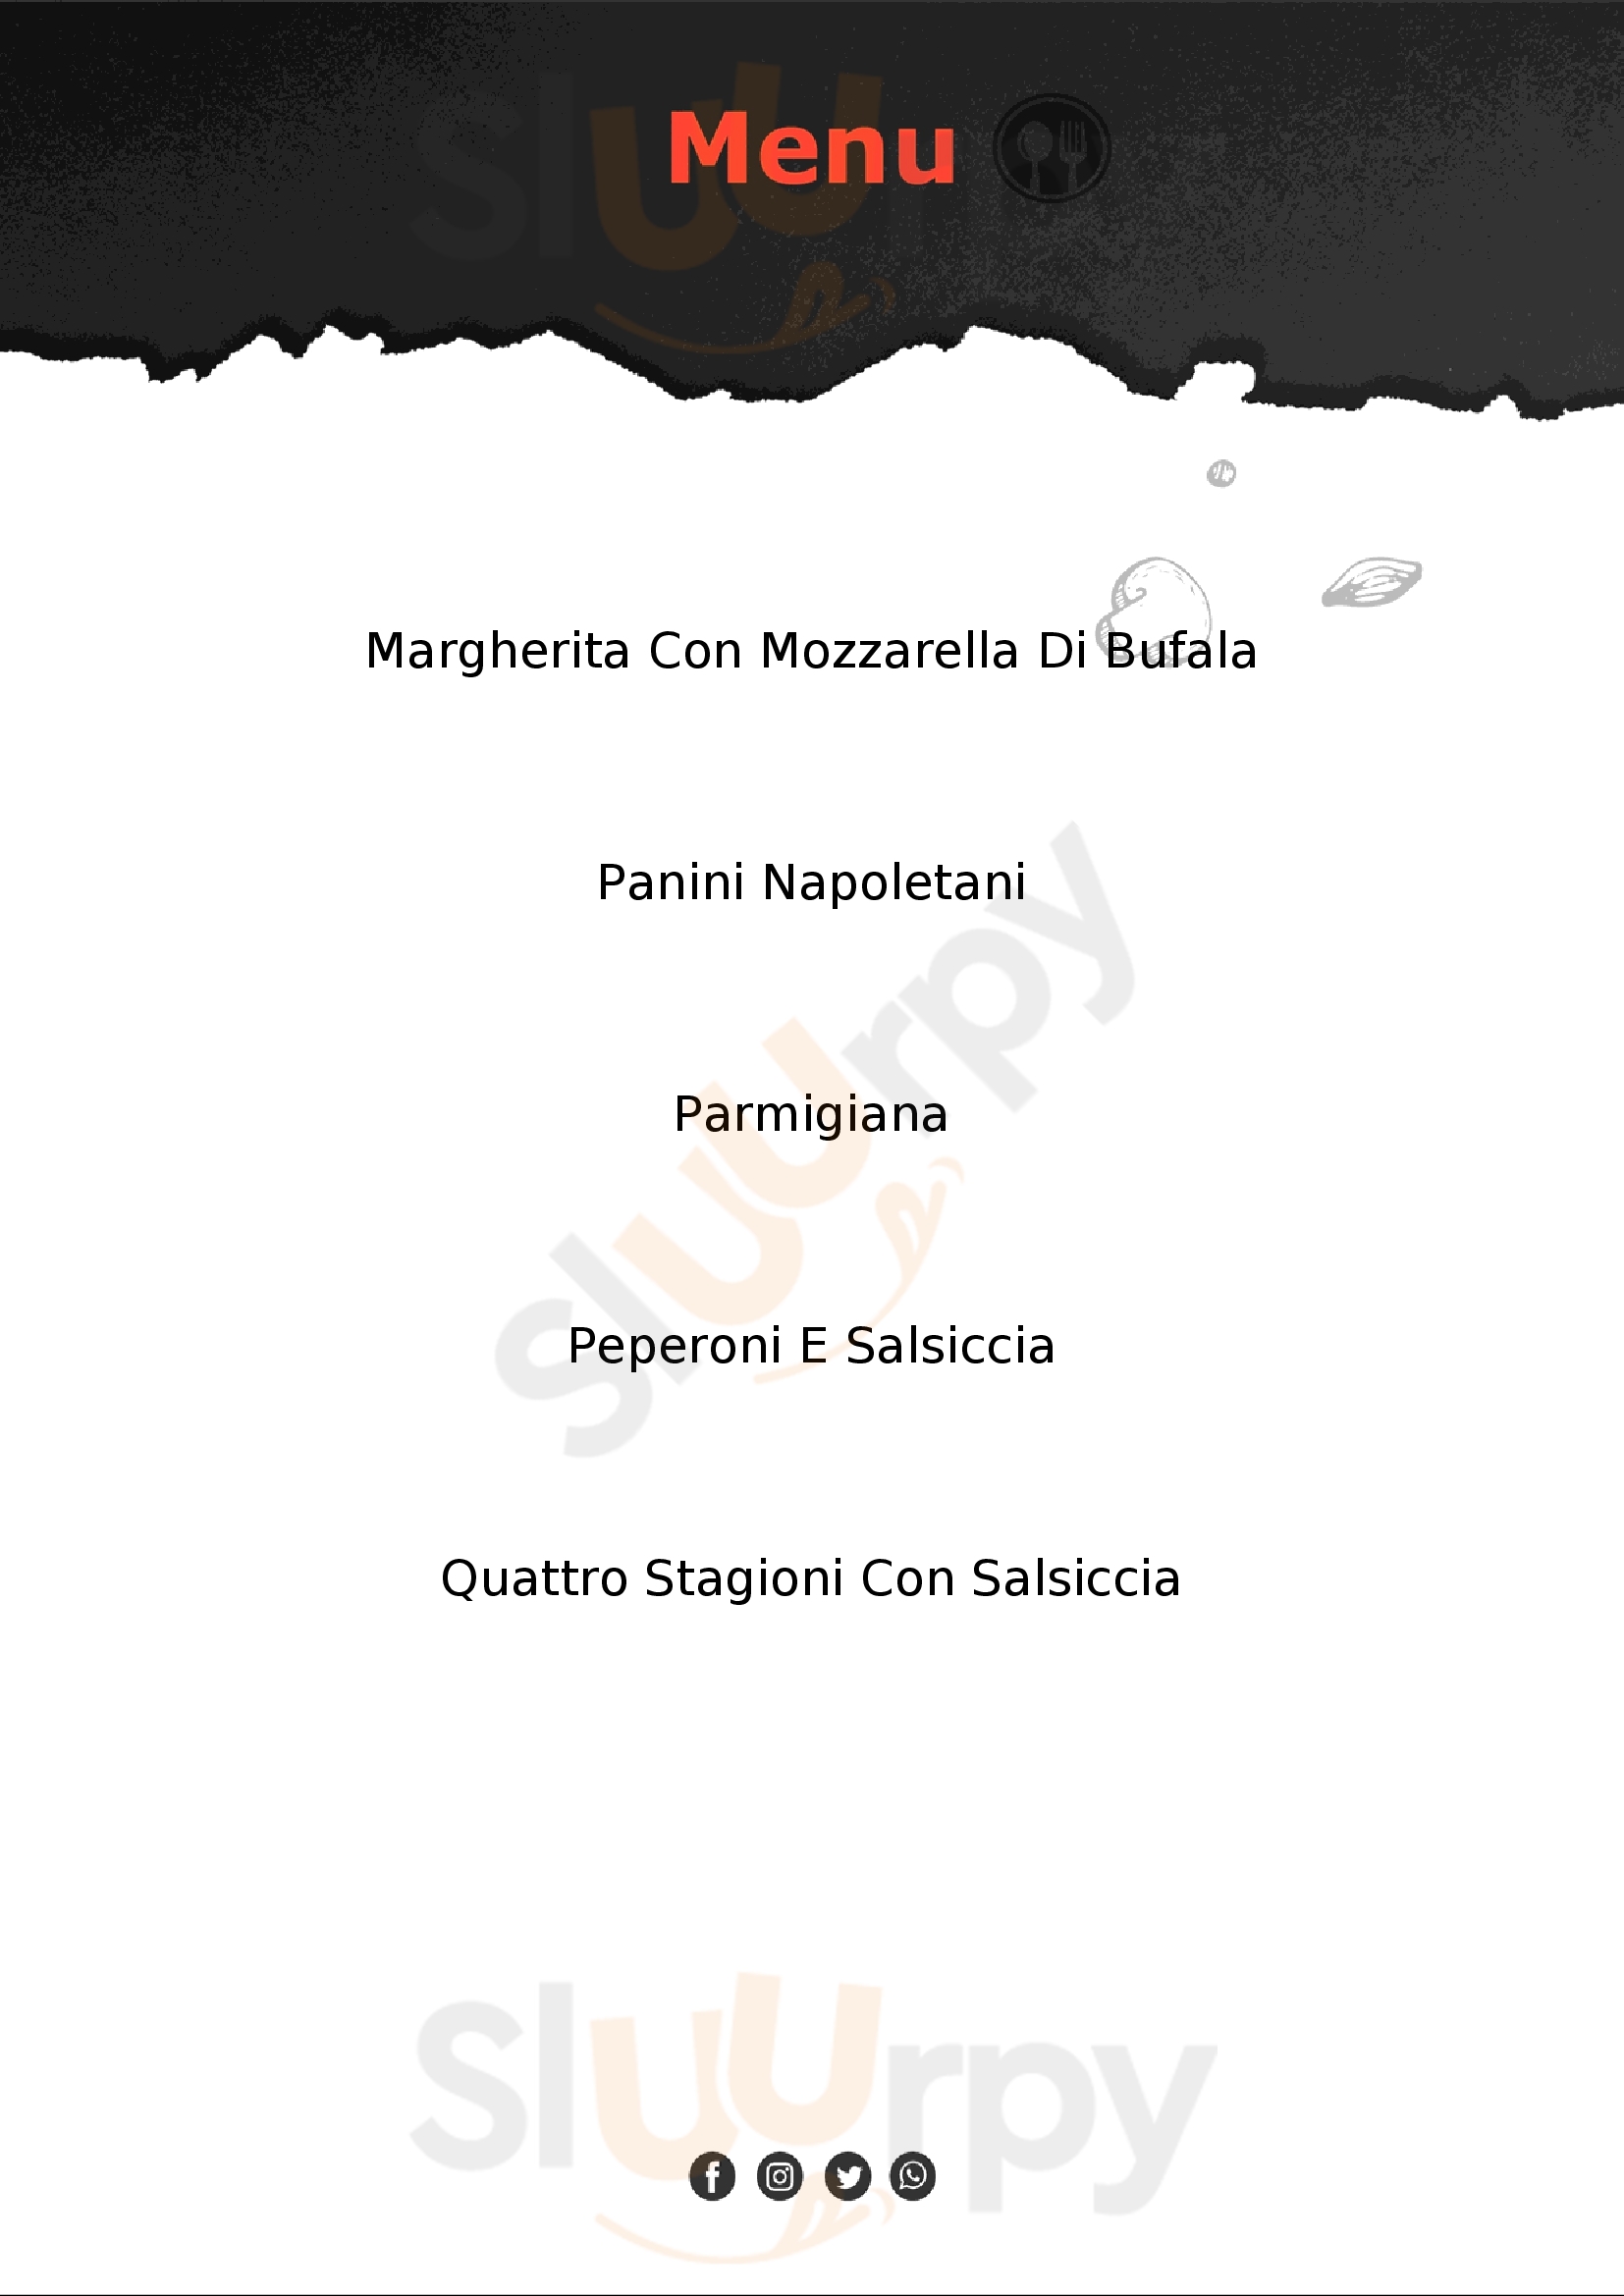 City Pizza San Giorgio del Sannio menù 1 pagina